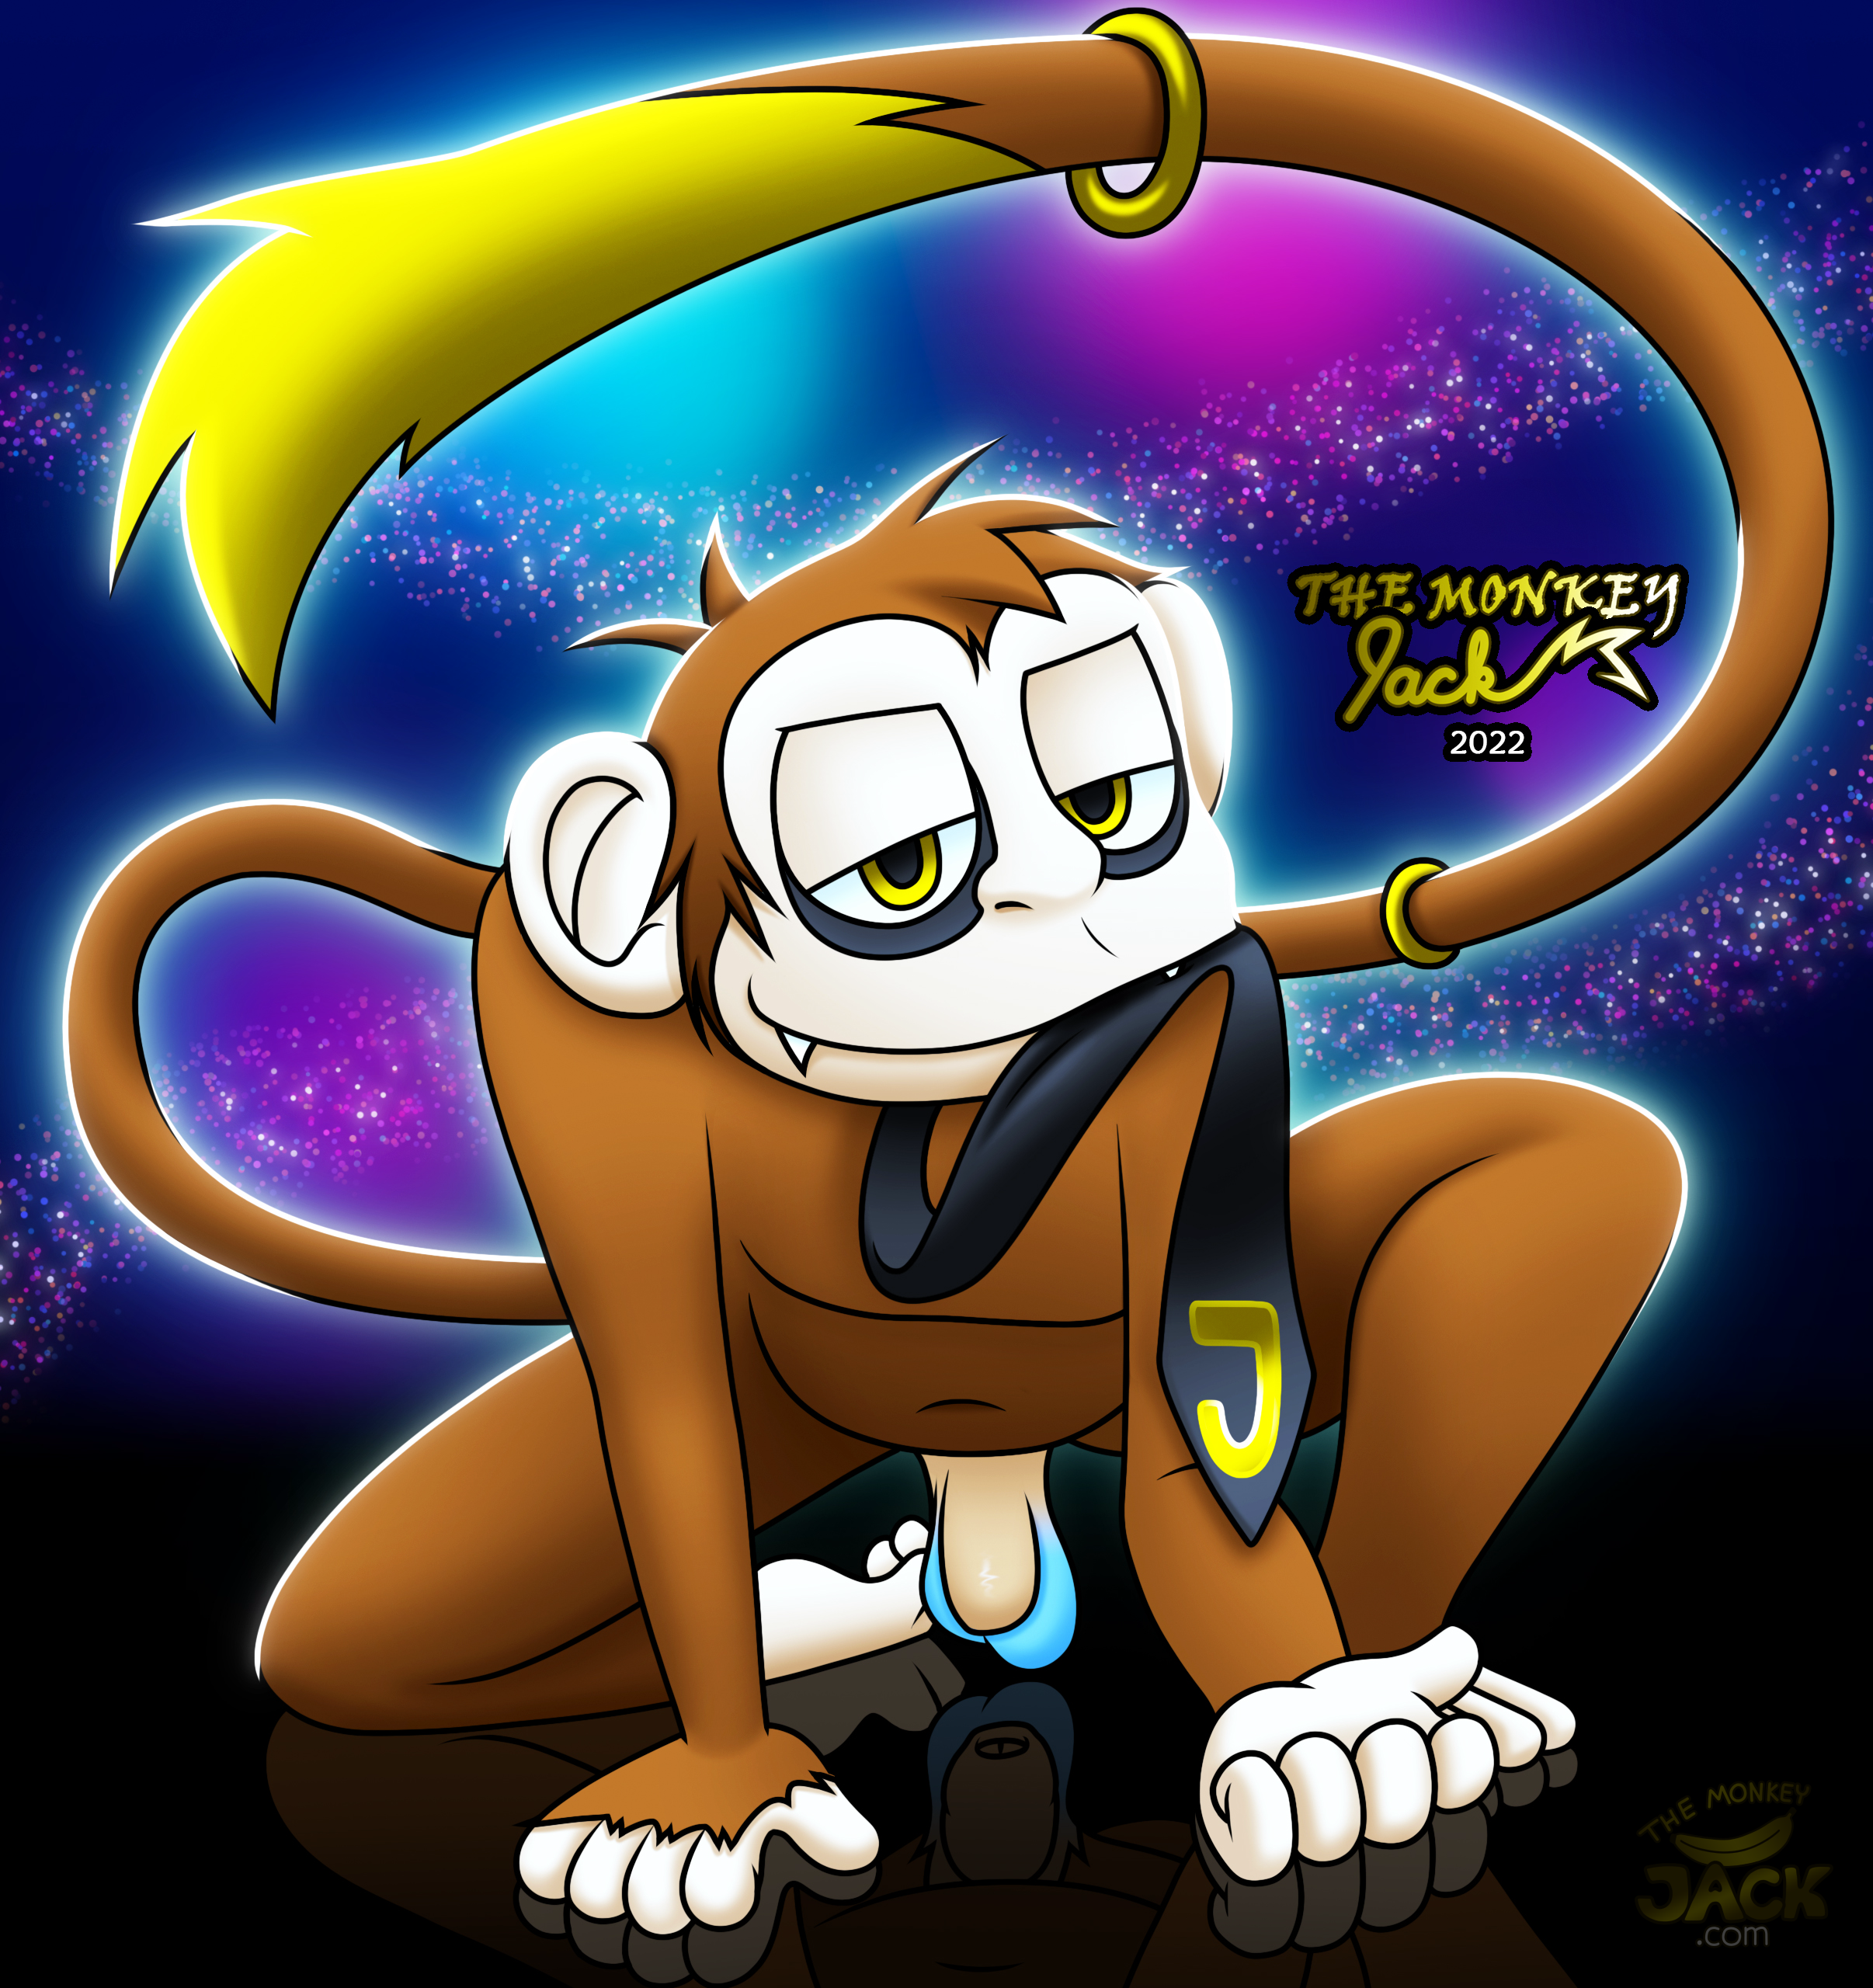 The Monkey Jack 2022 